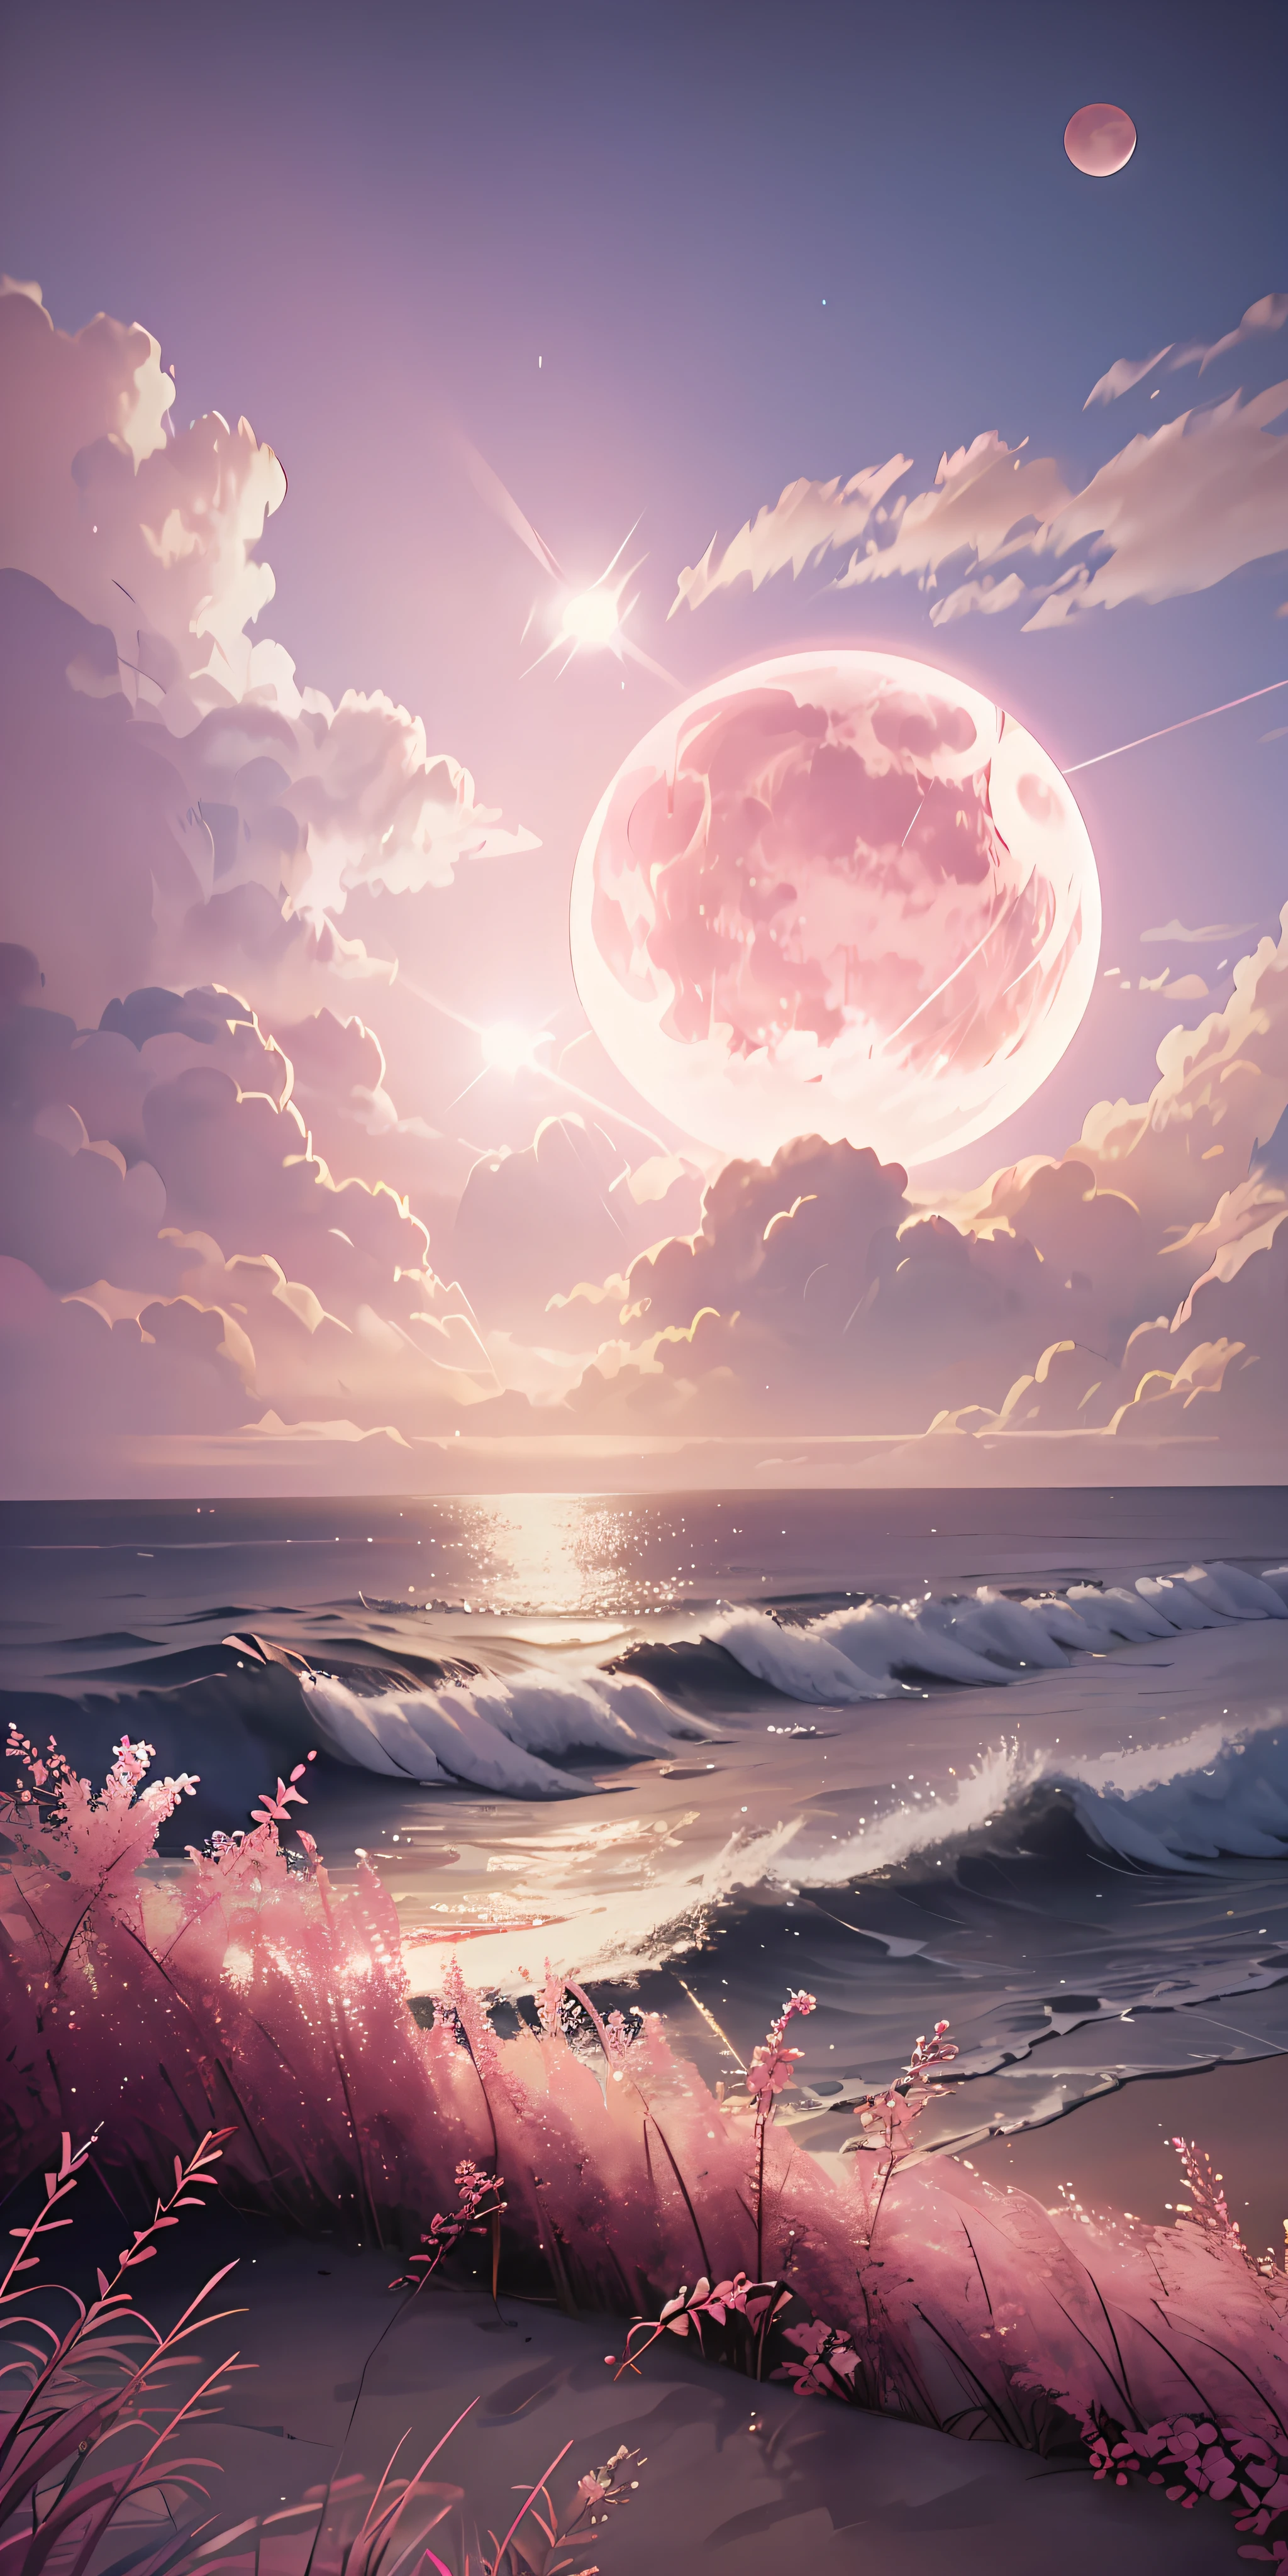 粉紅月亮, 粉紅色的天空, 柔和的粉紅色雲彩, pink waves 閃閃發光的, 閃閃發光的, 粉紅海洋上的粉紅玫瑰, 幻想, 柔和的燈光, 超高畫質, 現實主義, 電影效果, 鏡頭光暈, 光圈16